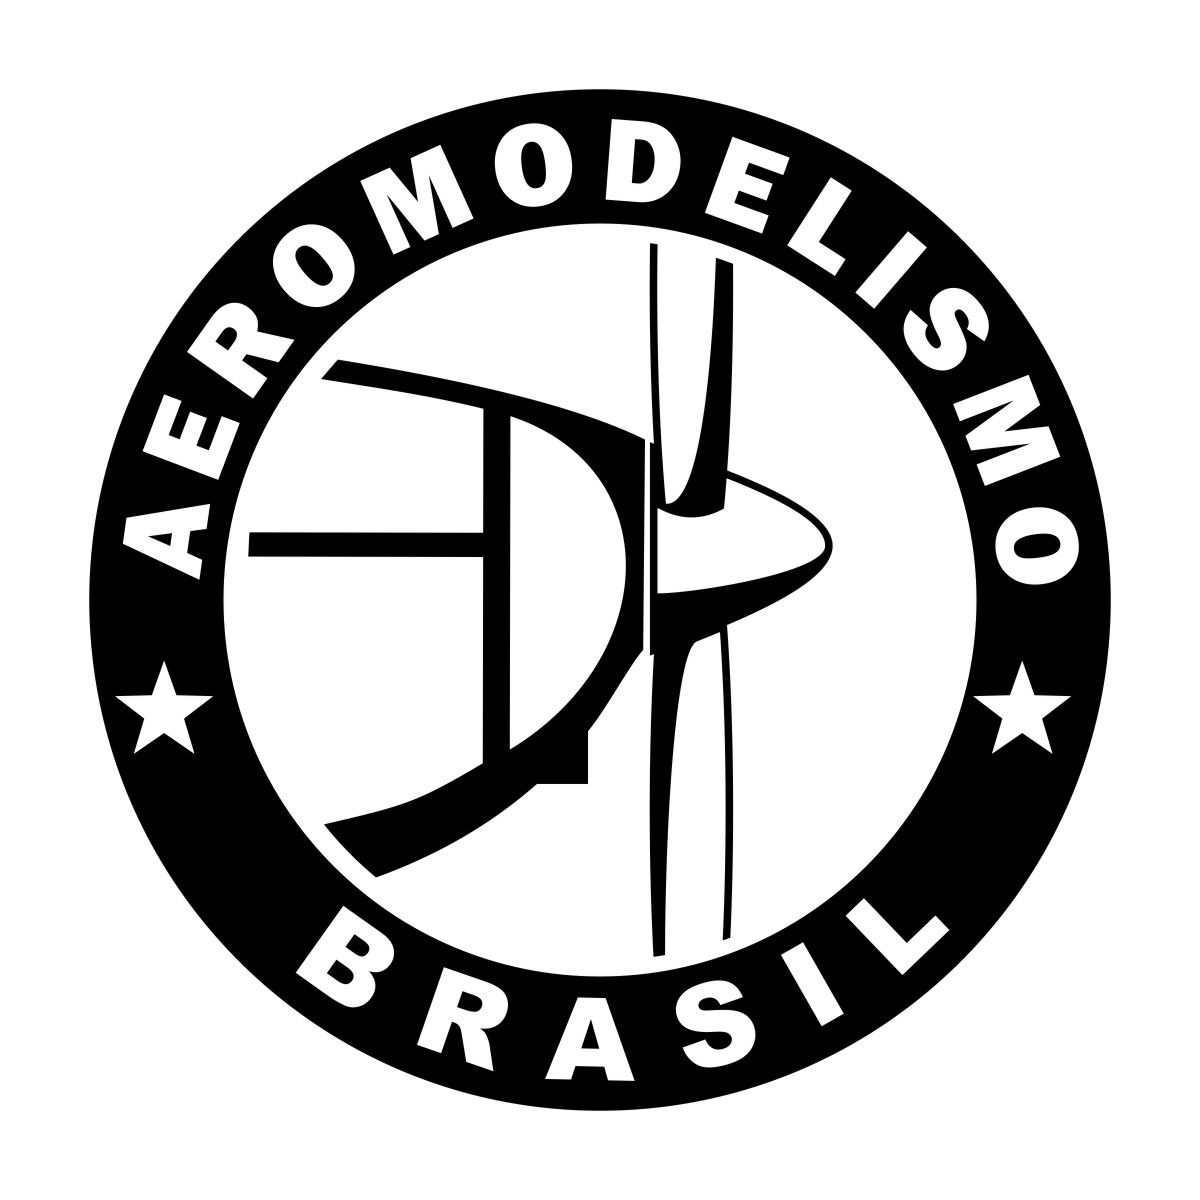 Adesivo Aeromodelismo Brasil